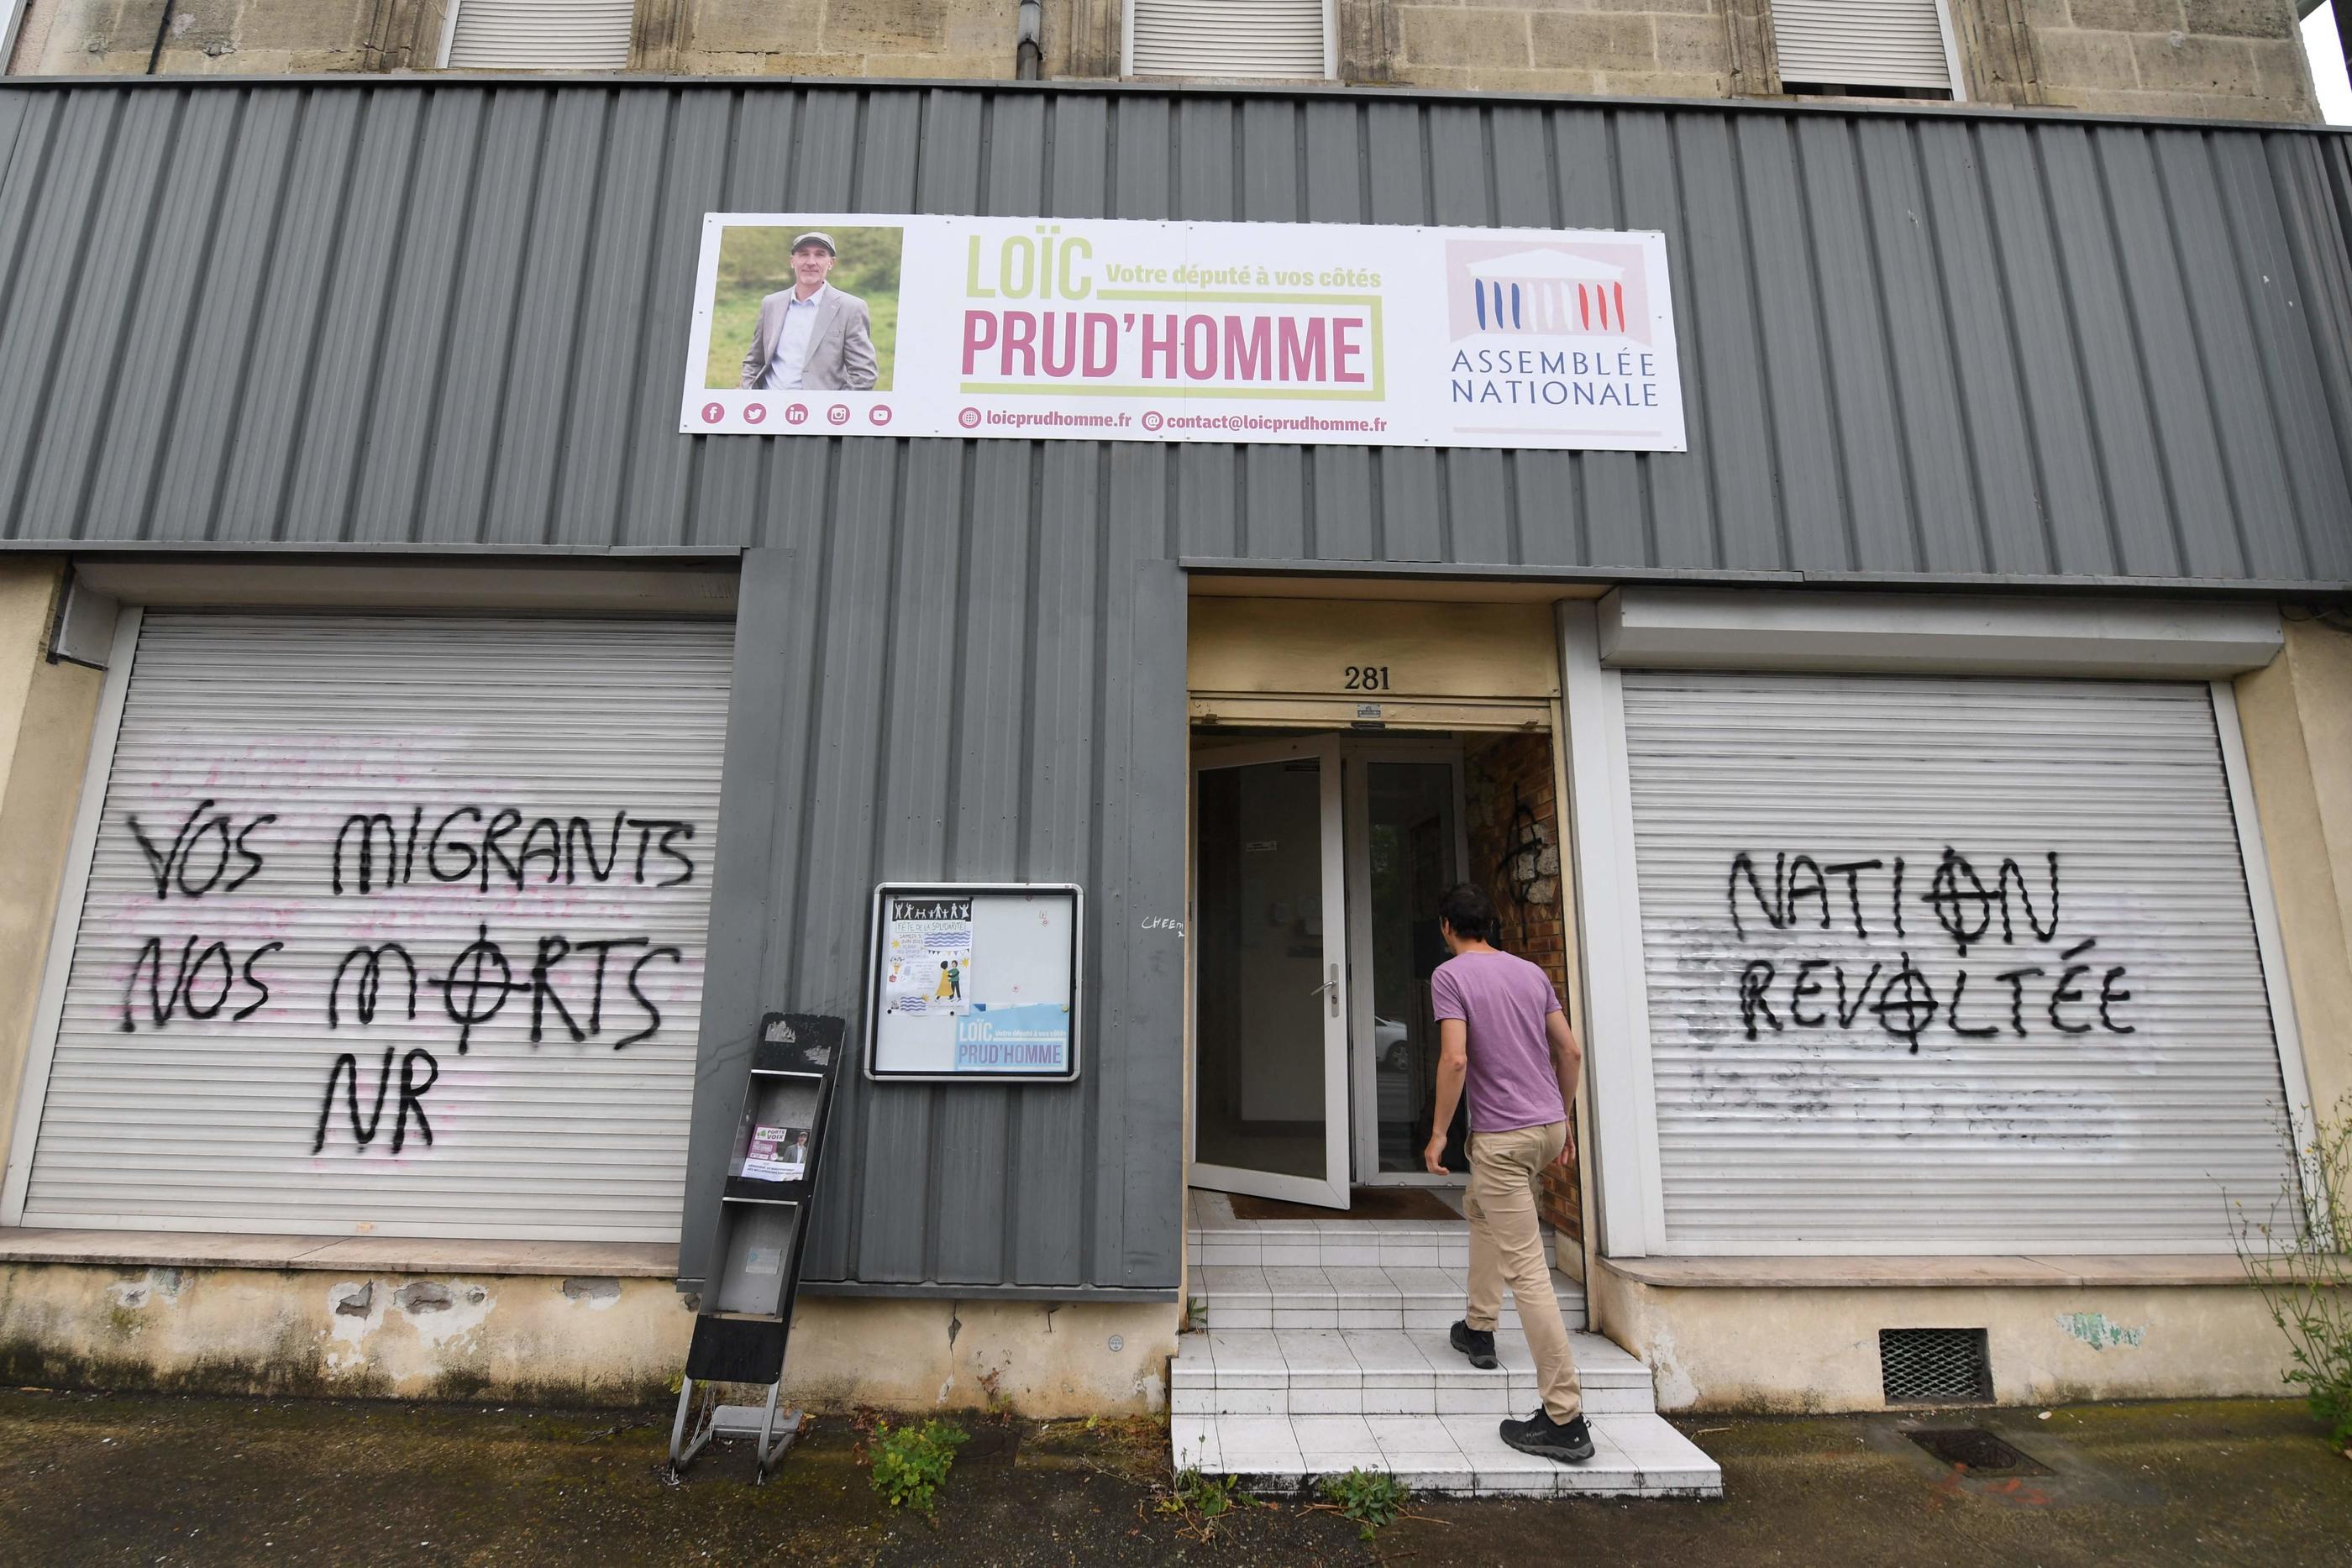 L'inscription « Vos migrants, nos morts » a été découverte vendredi sur le volet roulant de la permanence de Loïc Prud'homme à Villenave-d'Ornon, dans la banlieue de Bordeaux. MEHDI FEDOUACH / AFP